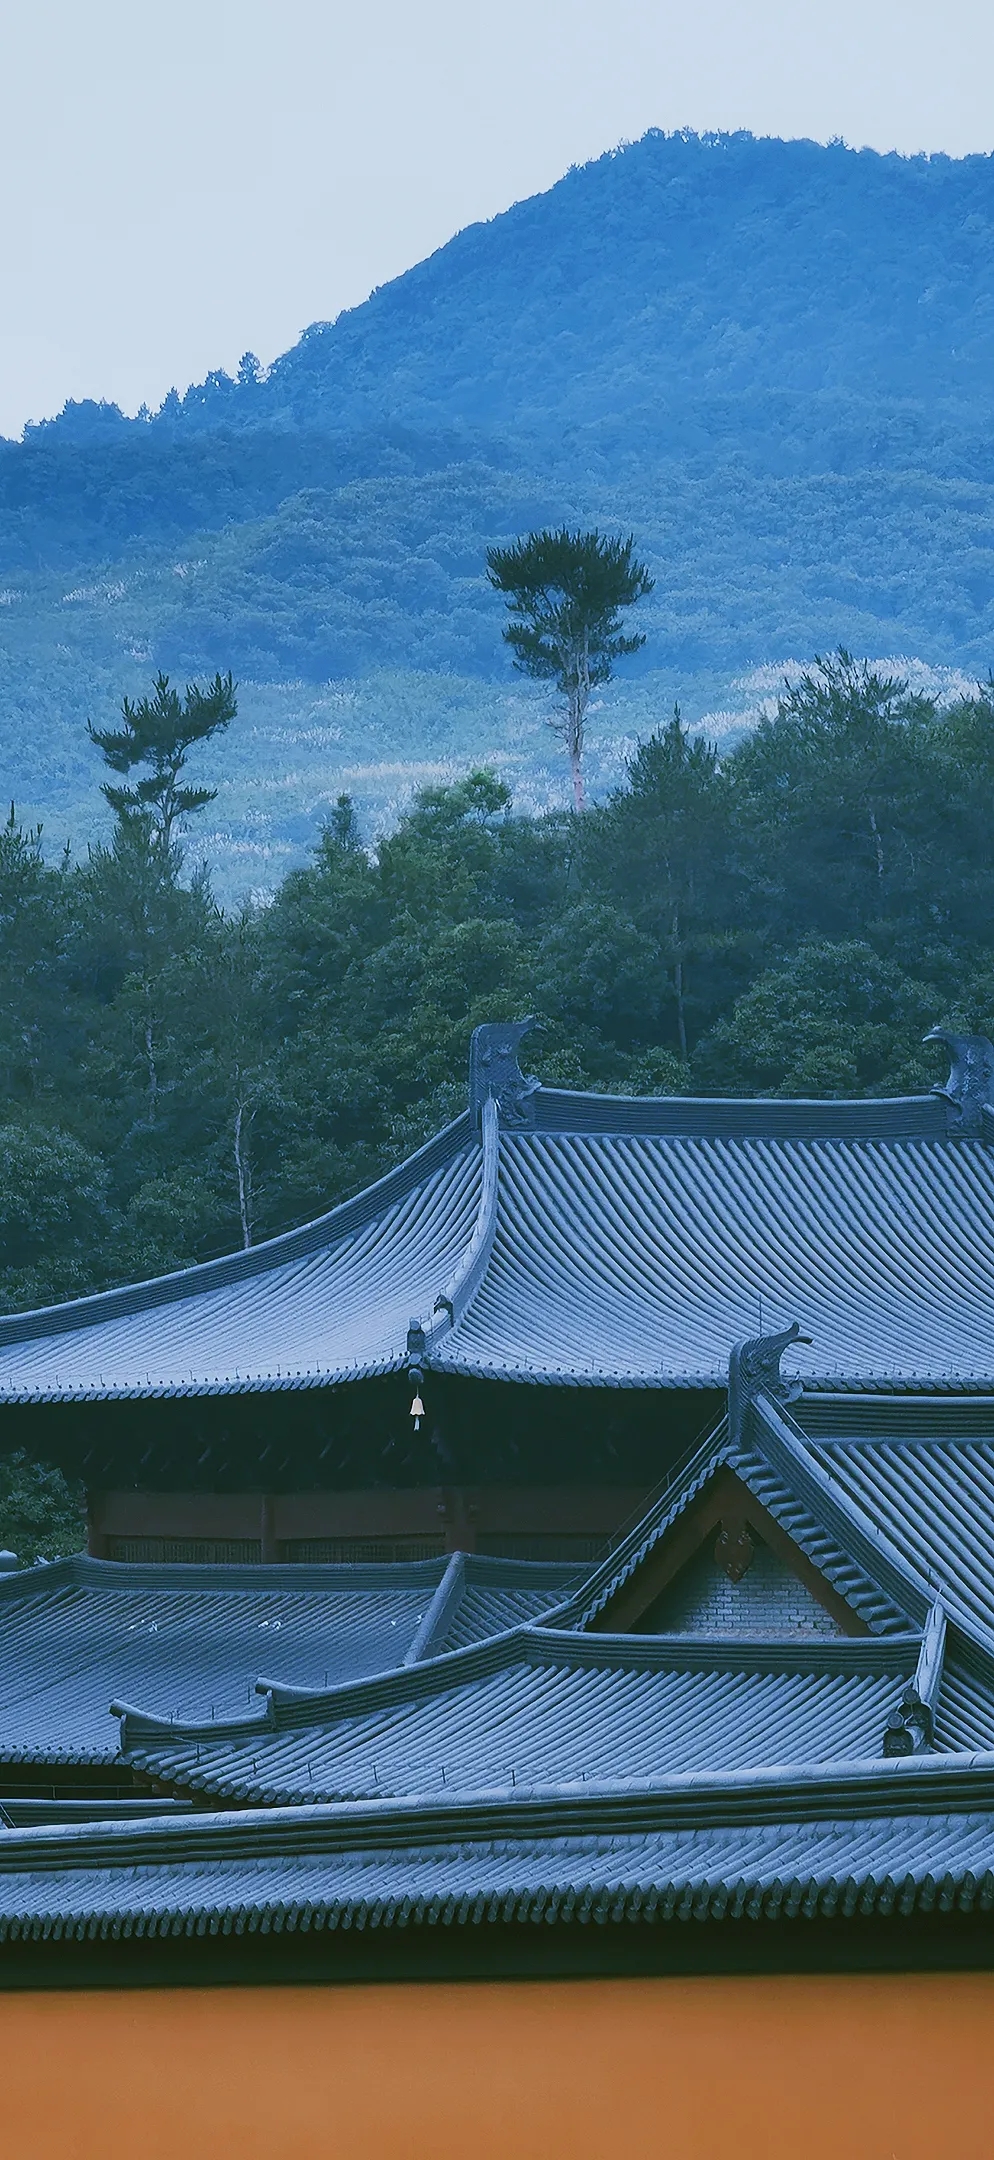 美丽寺院 | 建设中的雪窦山资福律寺